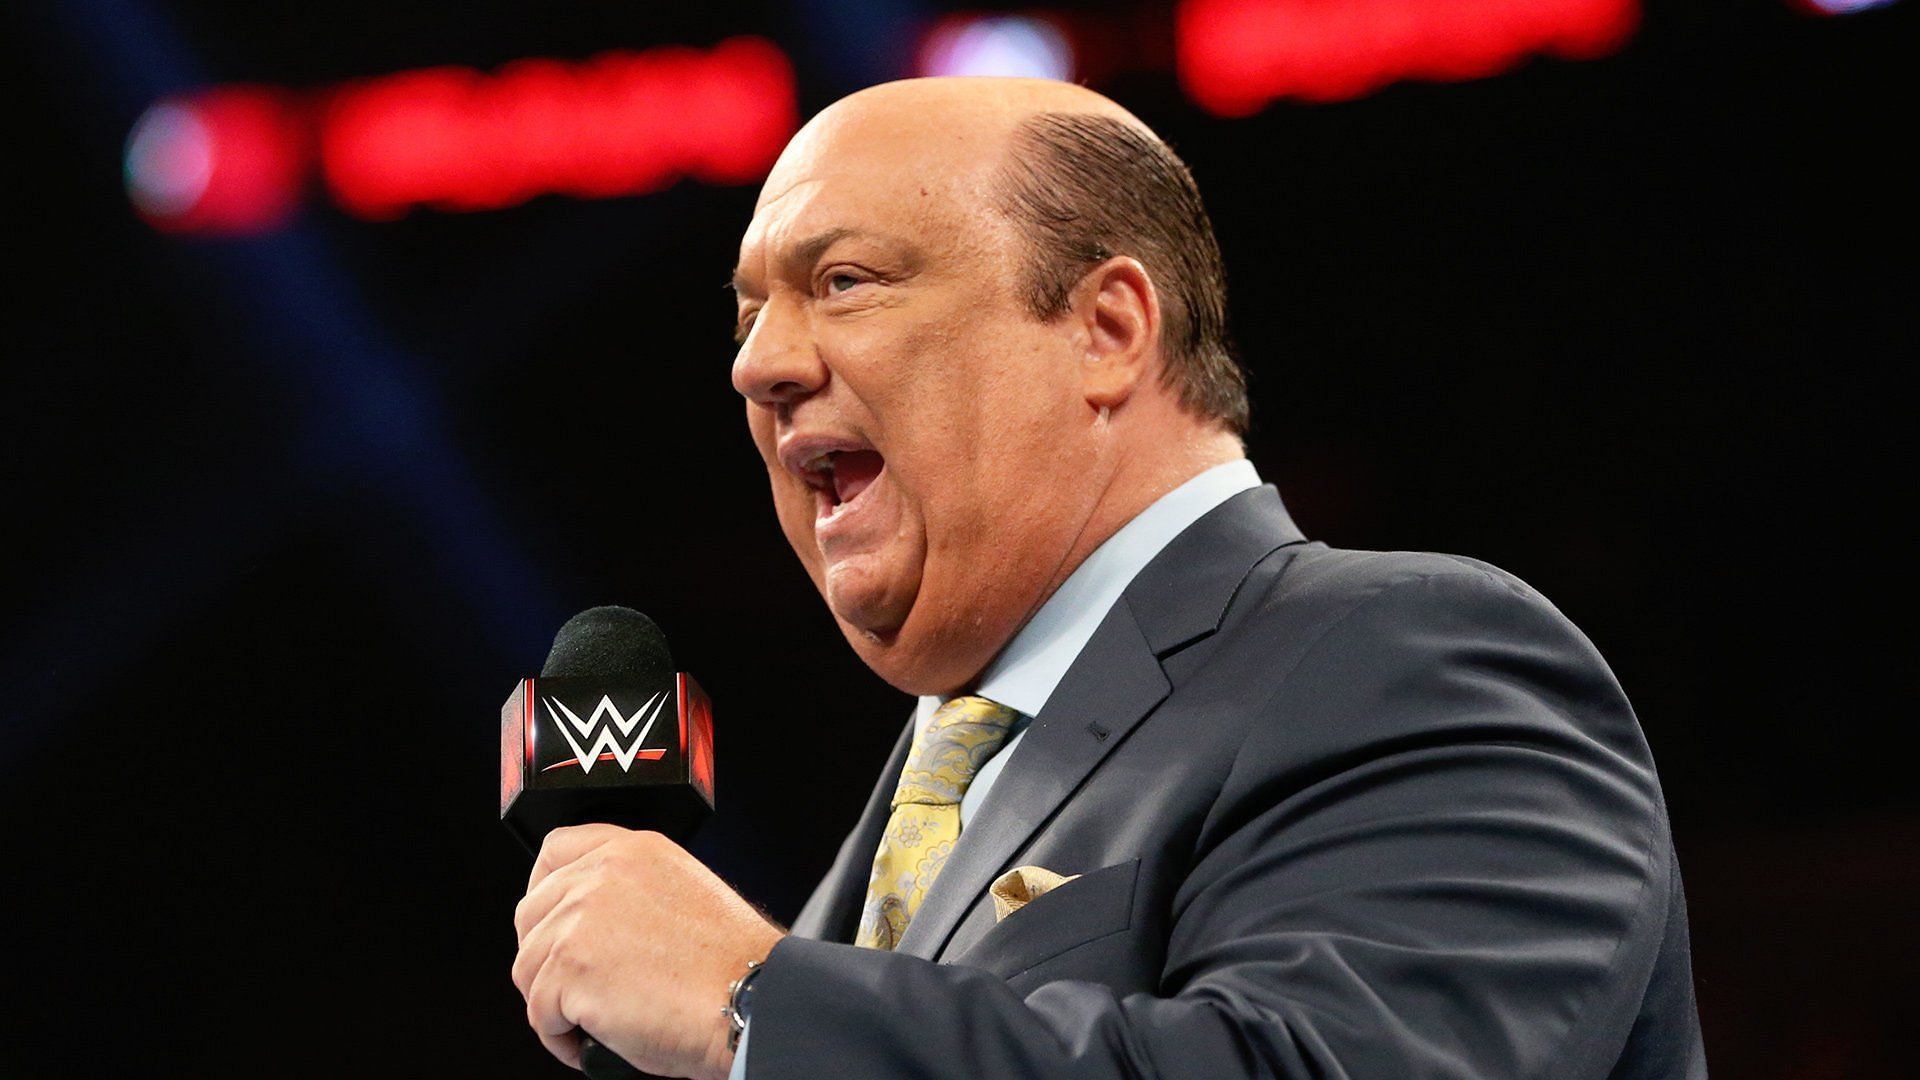 Paul Heyman cuts a heated promo on WWE RAW